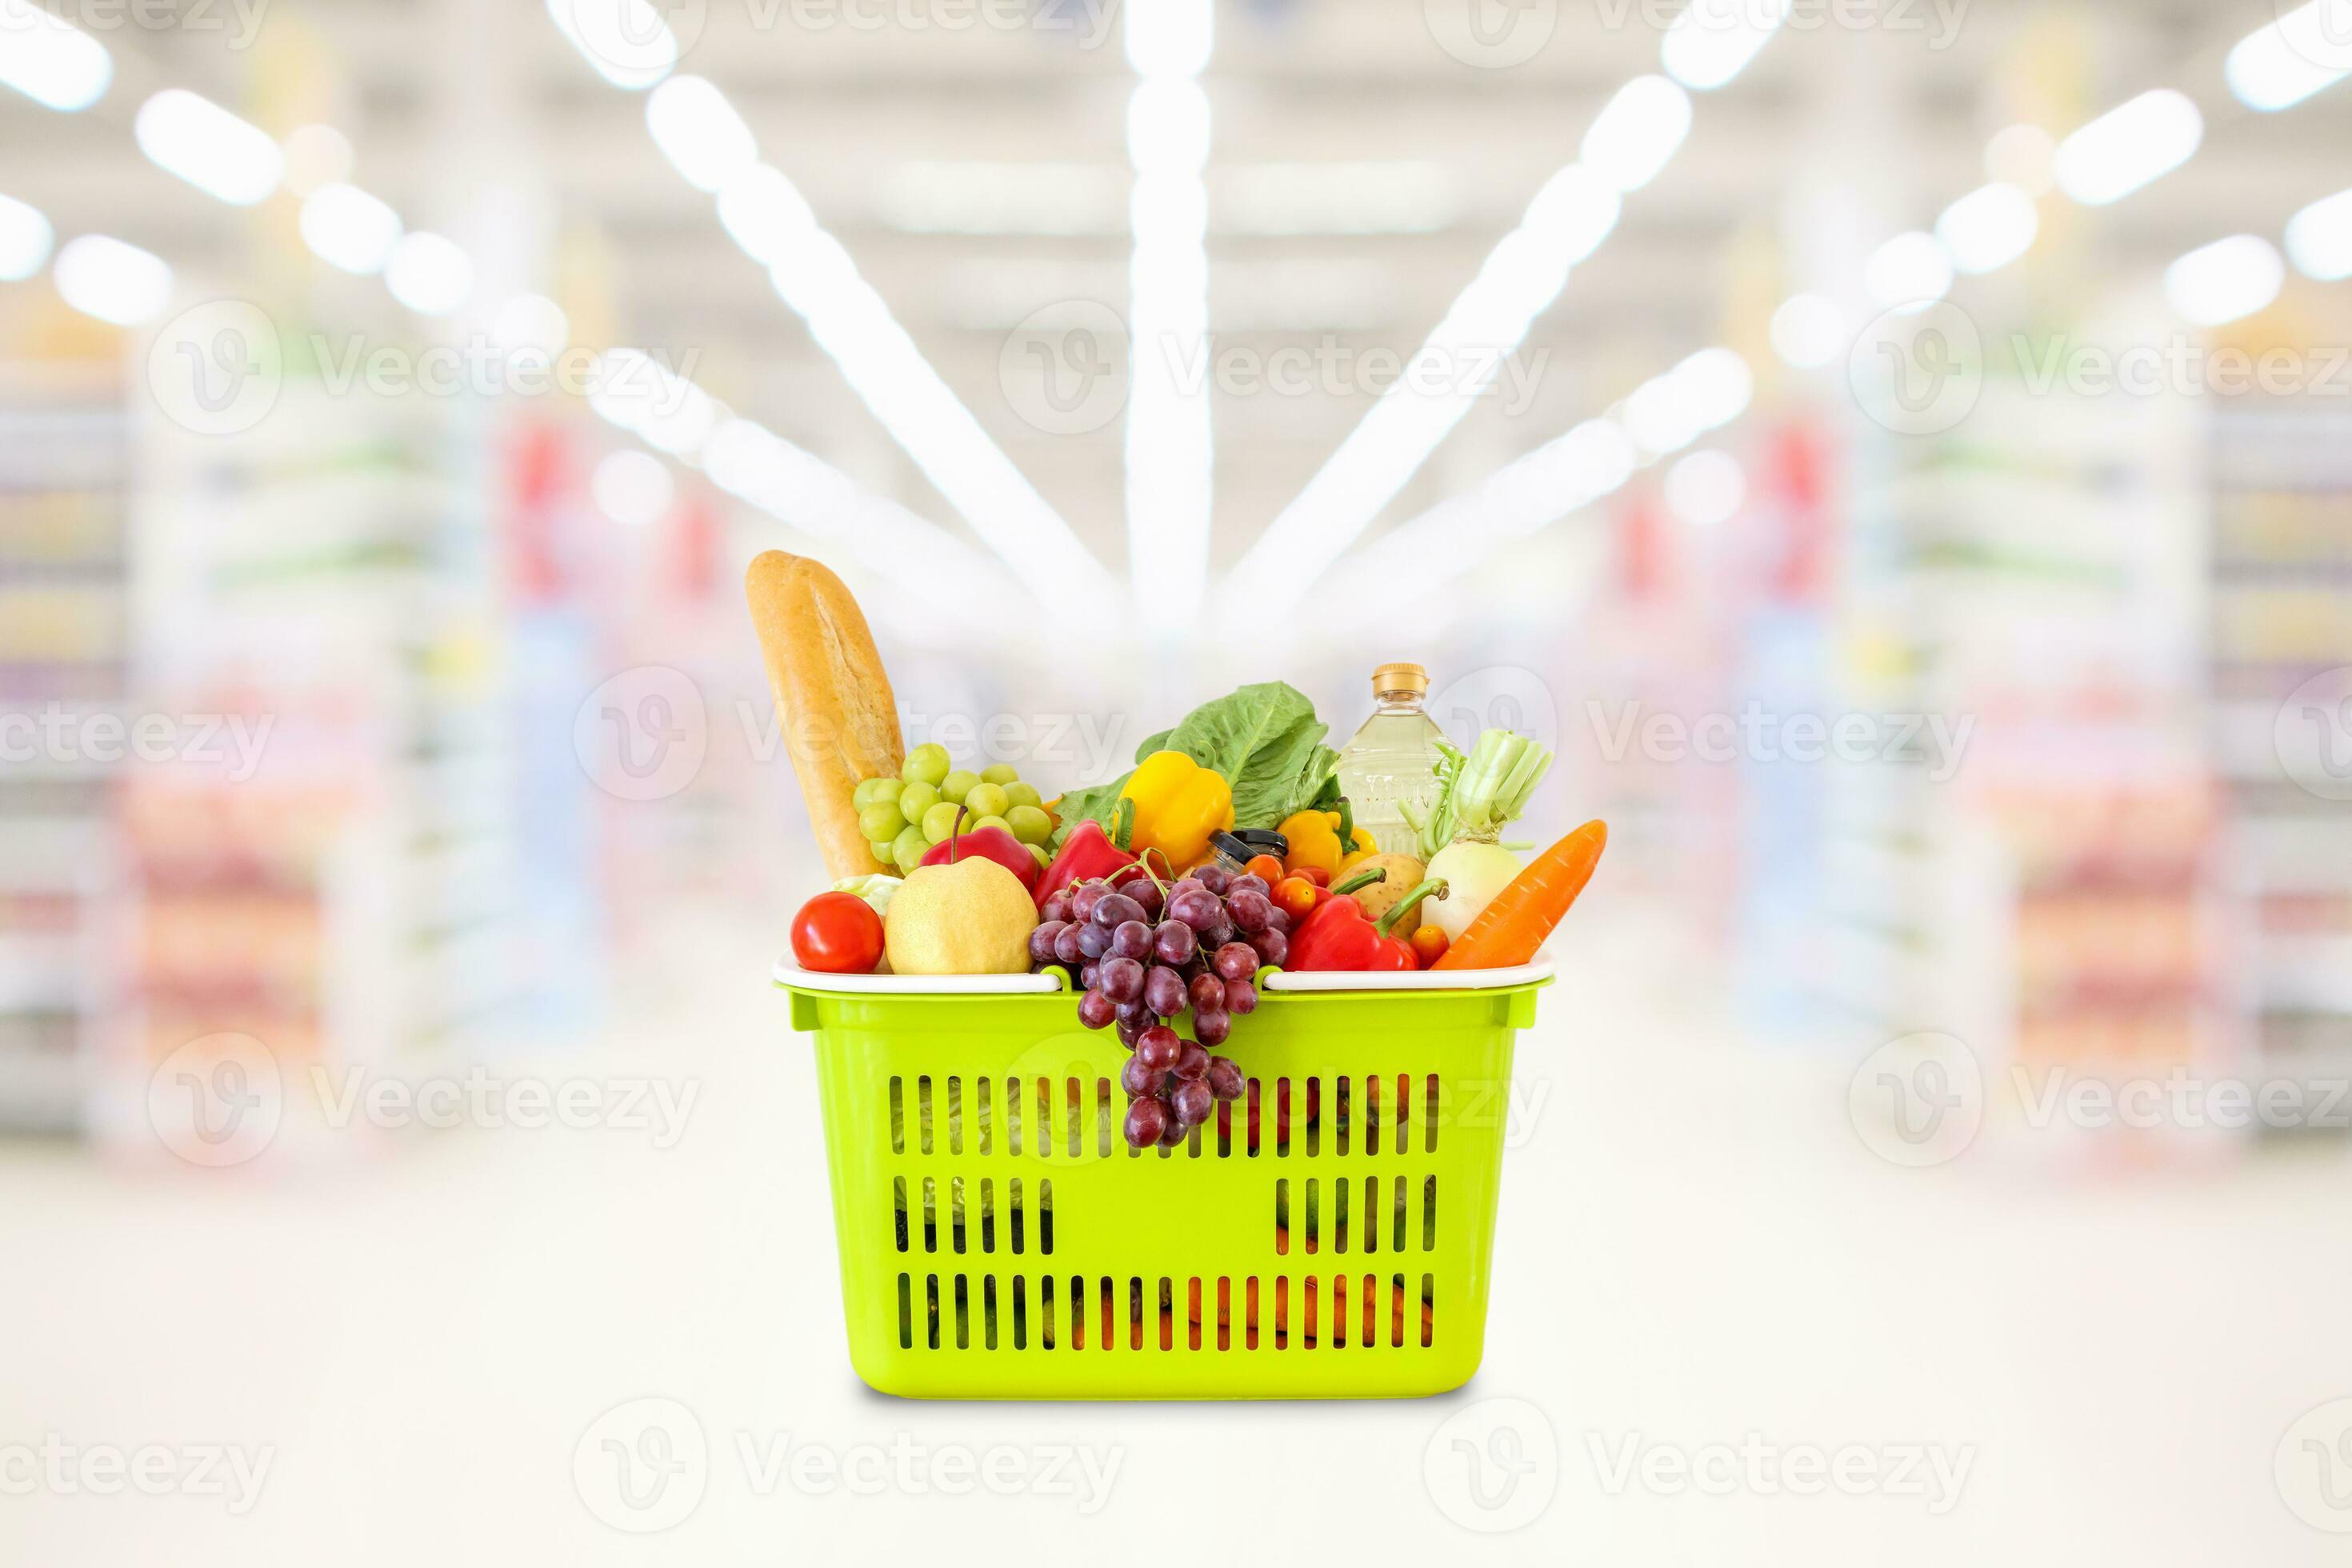 https://static.vecteezy.com/ti/fotos-kostenlos/p2/24739578-einkaufen-korb-mit-fruchte-und-gemuse-im-supermarkt-lebensmittelgeschaft-geschaft-verschwommen-hintergrund-foto.jpg